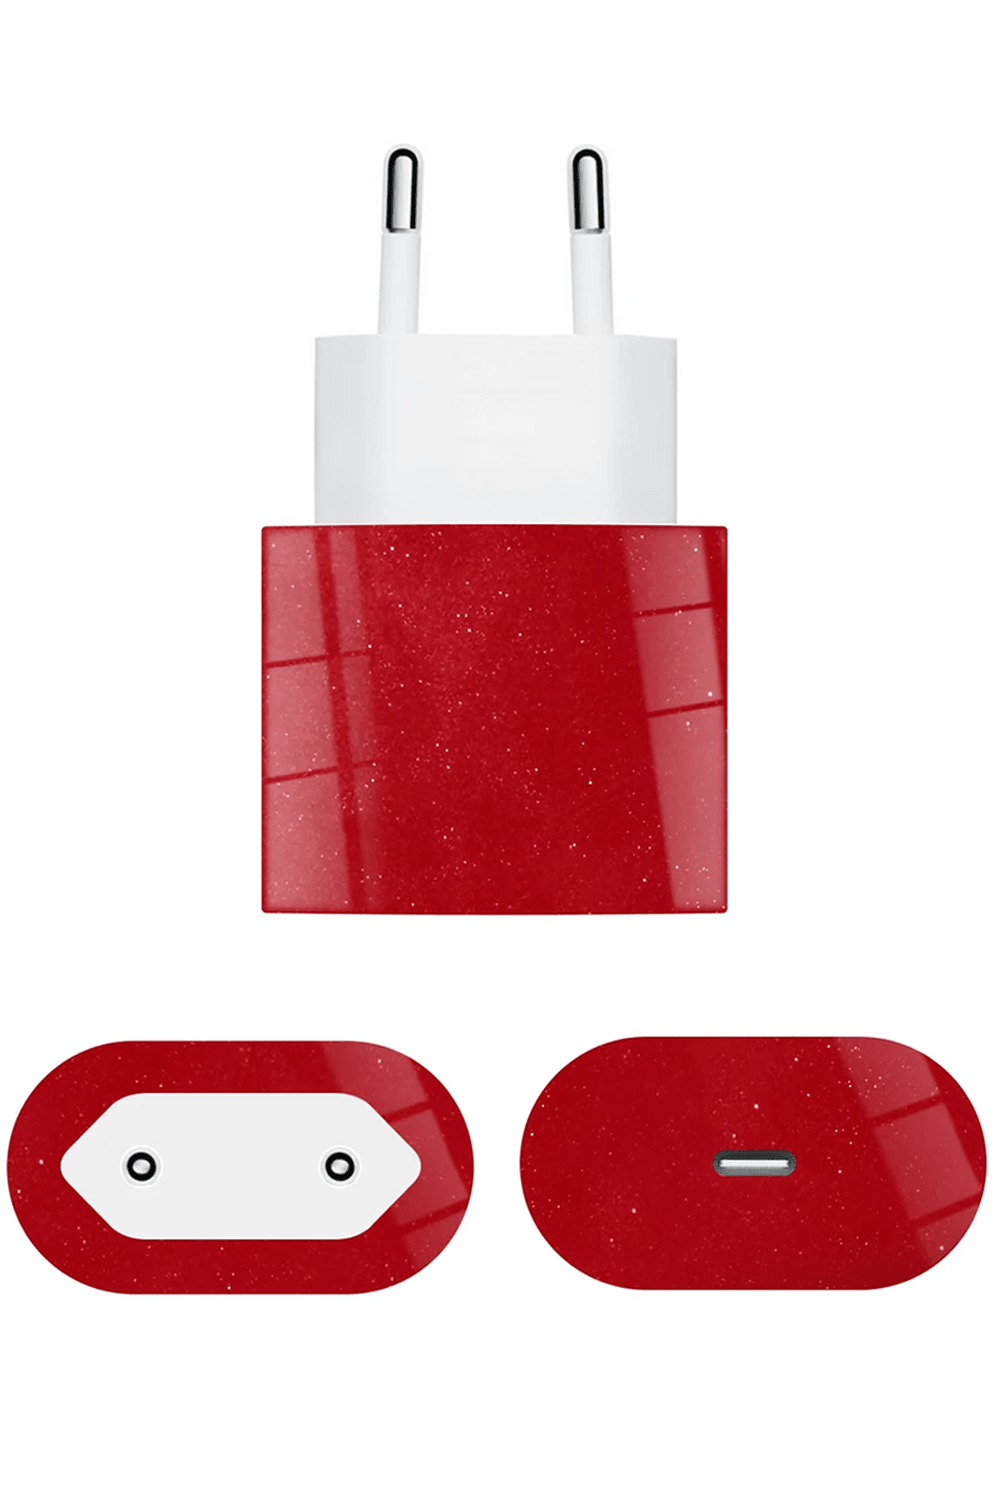 Apple 20w Şarj Aleti Kaplama Vişne Kırmızısı